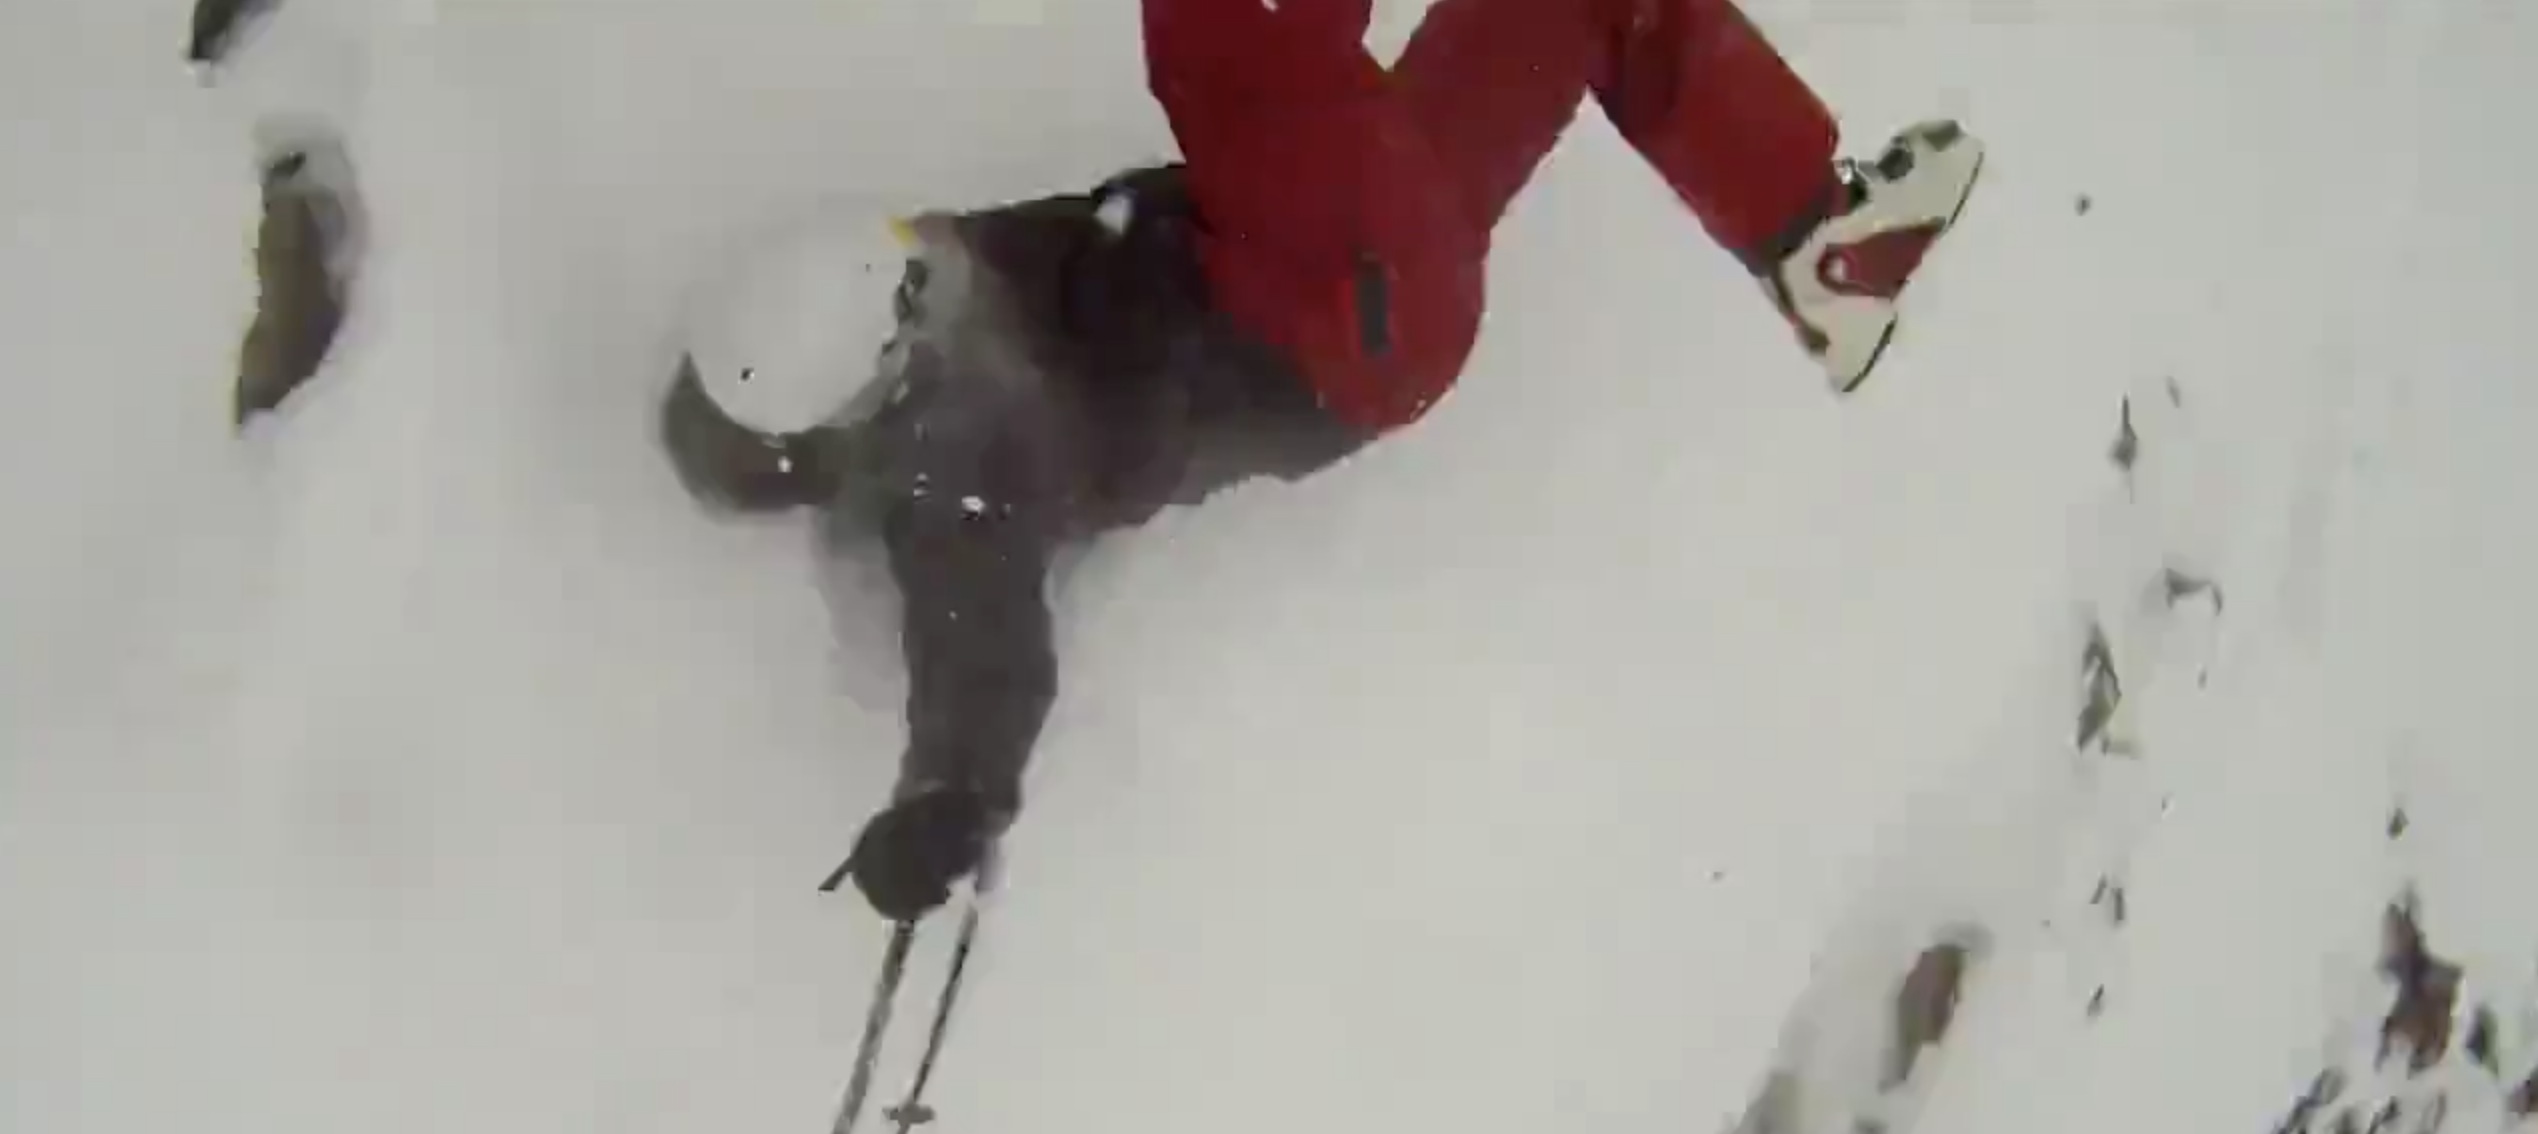 Skieur filme sa chute en hors piste